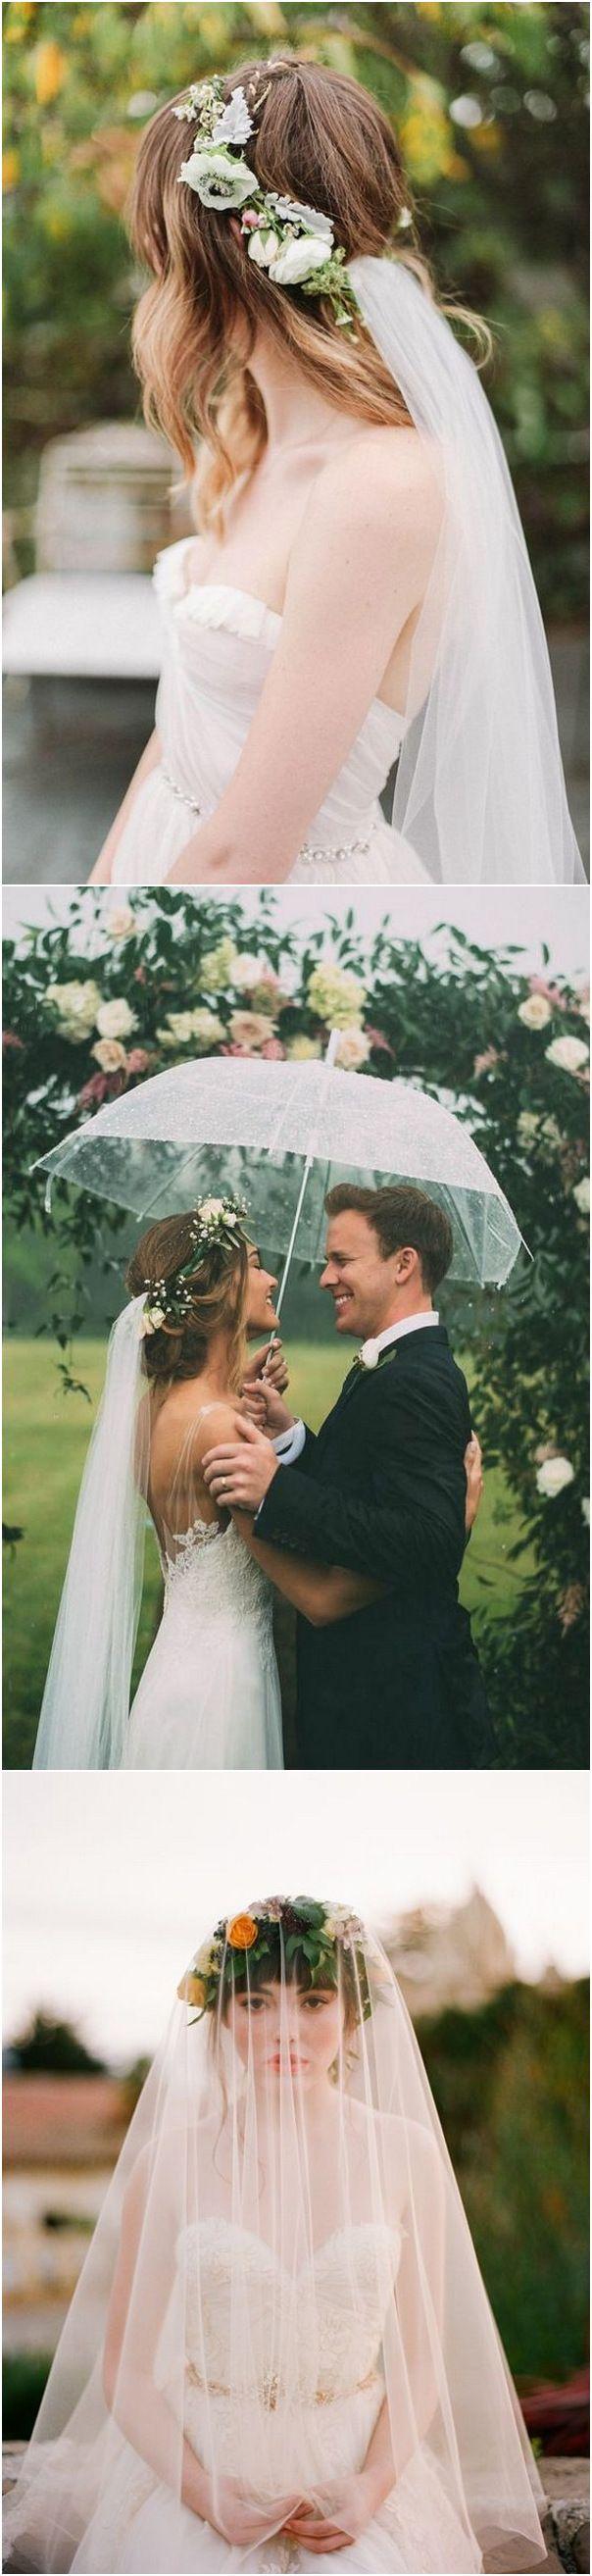 زفاف - Top 10 Wedding Hairstyles With Flower Crown Veil For 2018